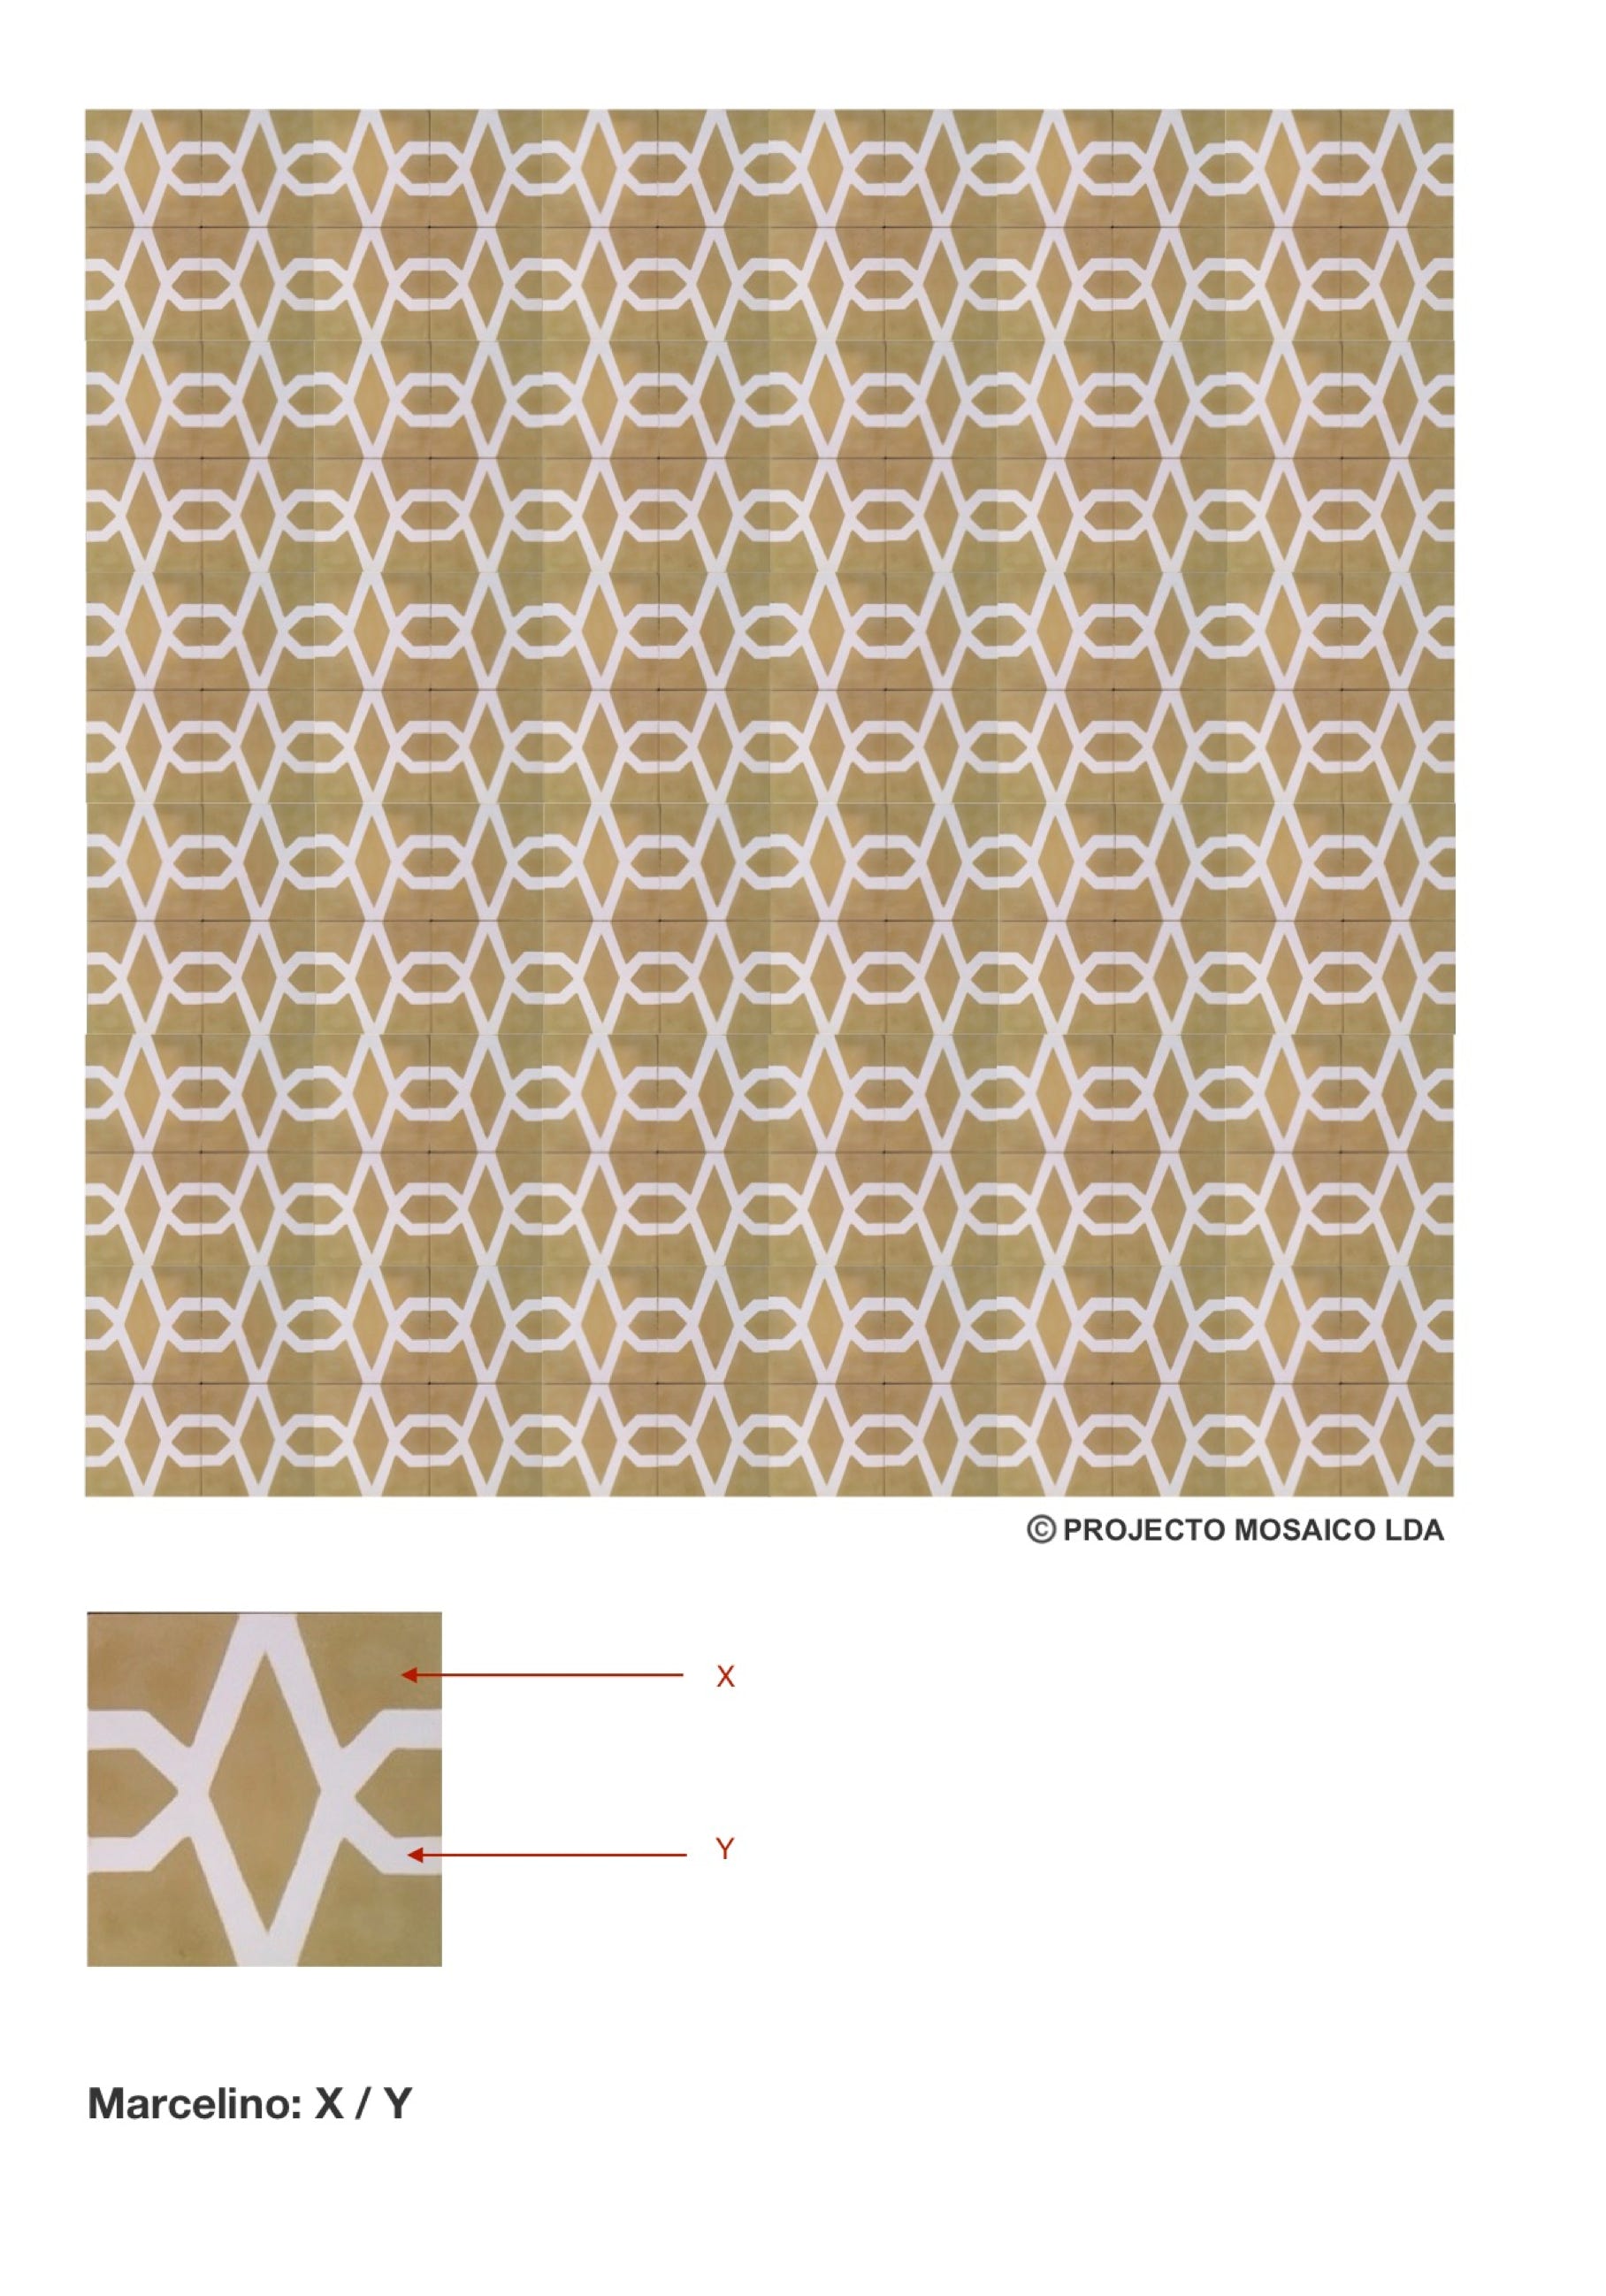 illustração de aplicação do mosaico hidráulico ref: Marcelino